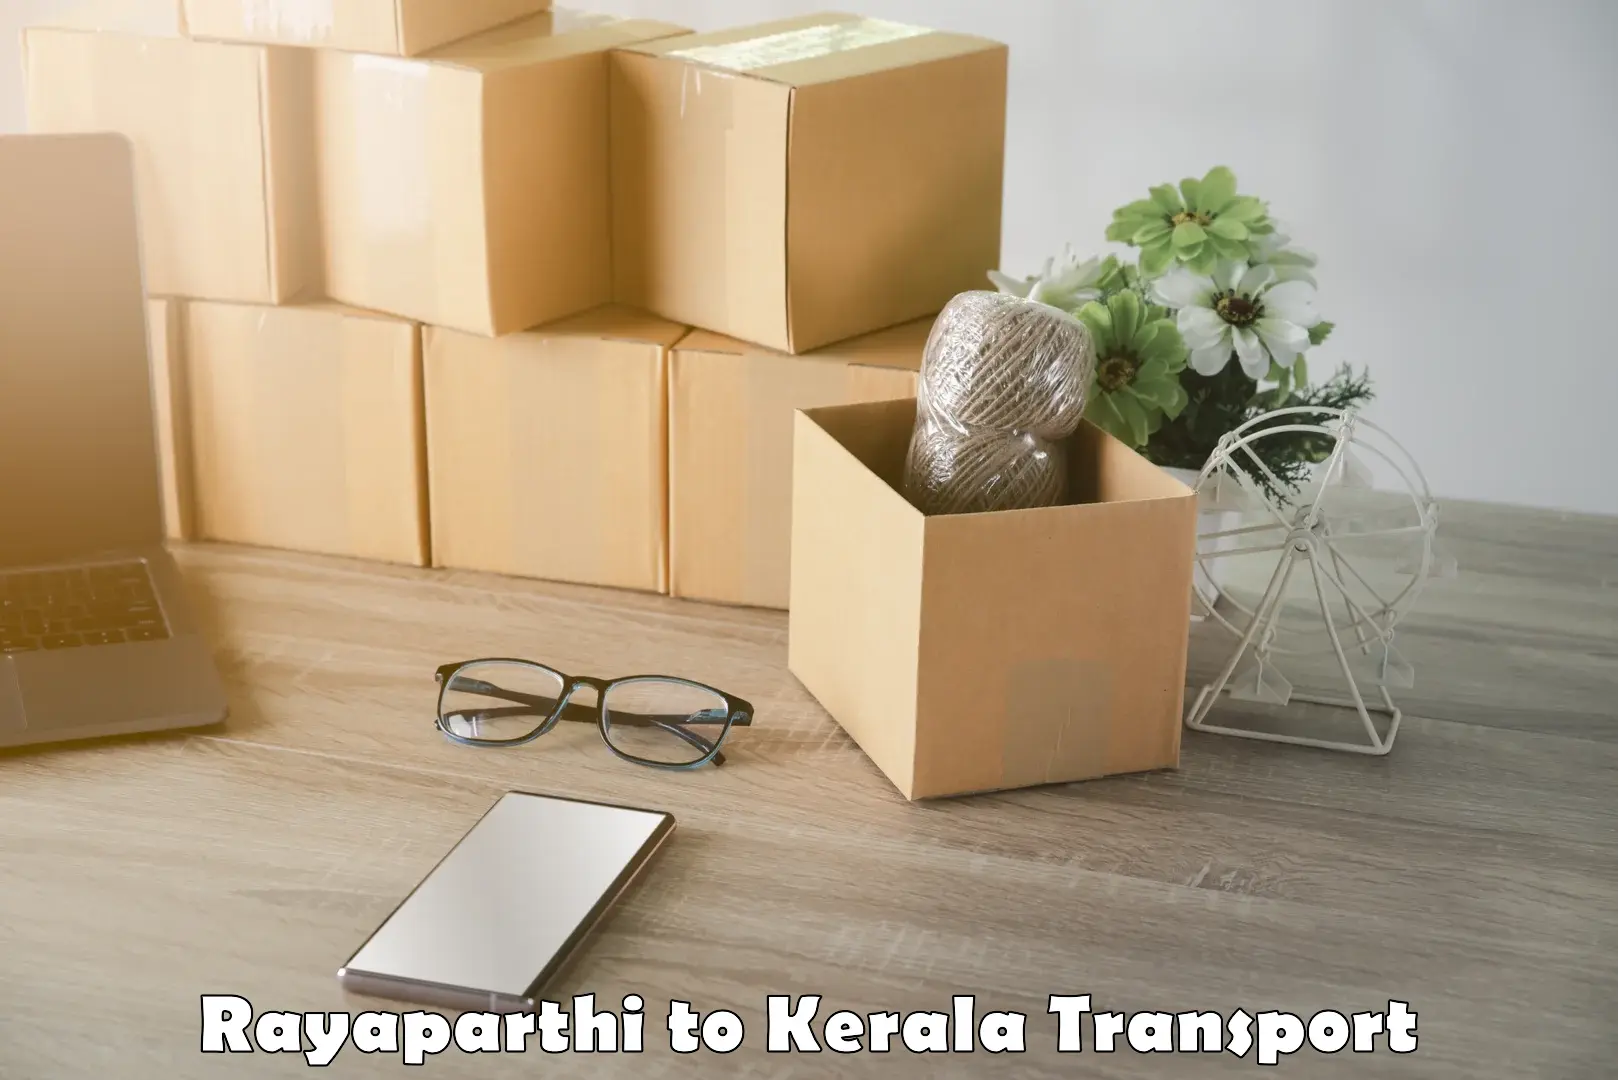 Daily parcel service transport Rayaparthi to Taliparamba